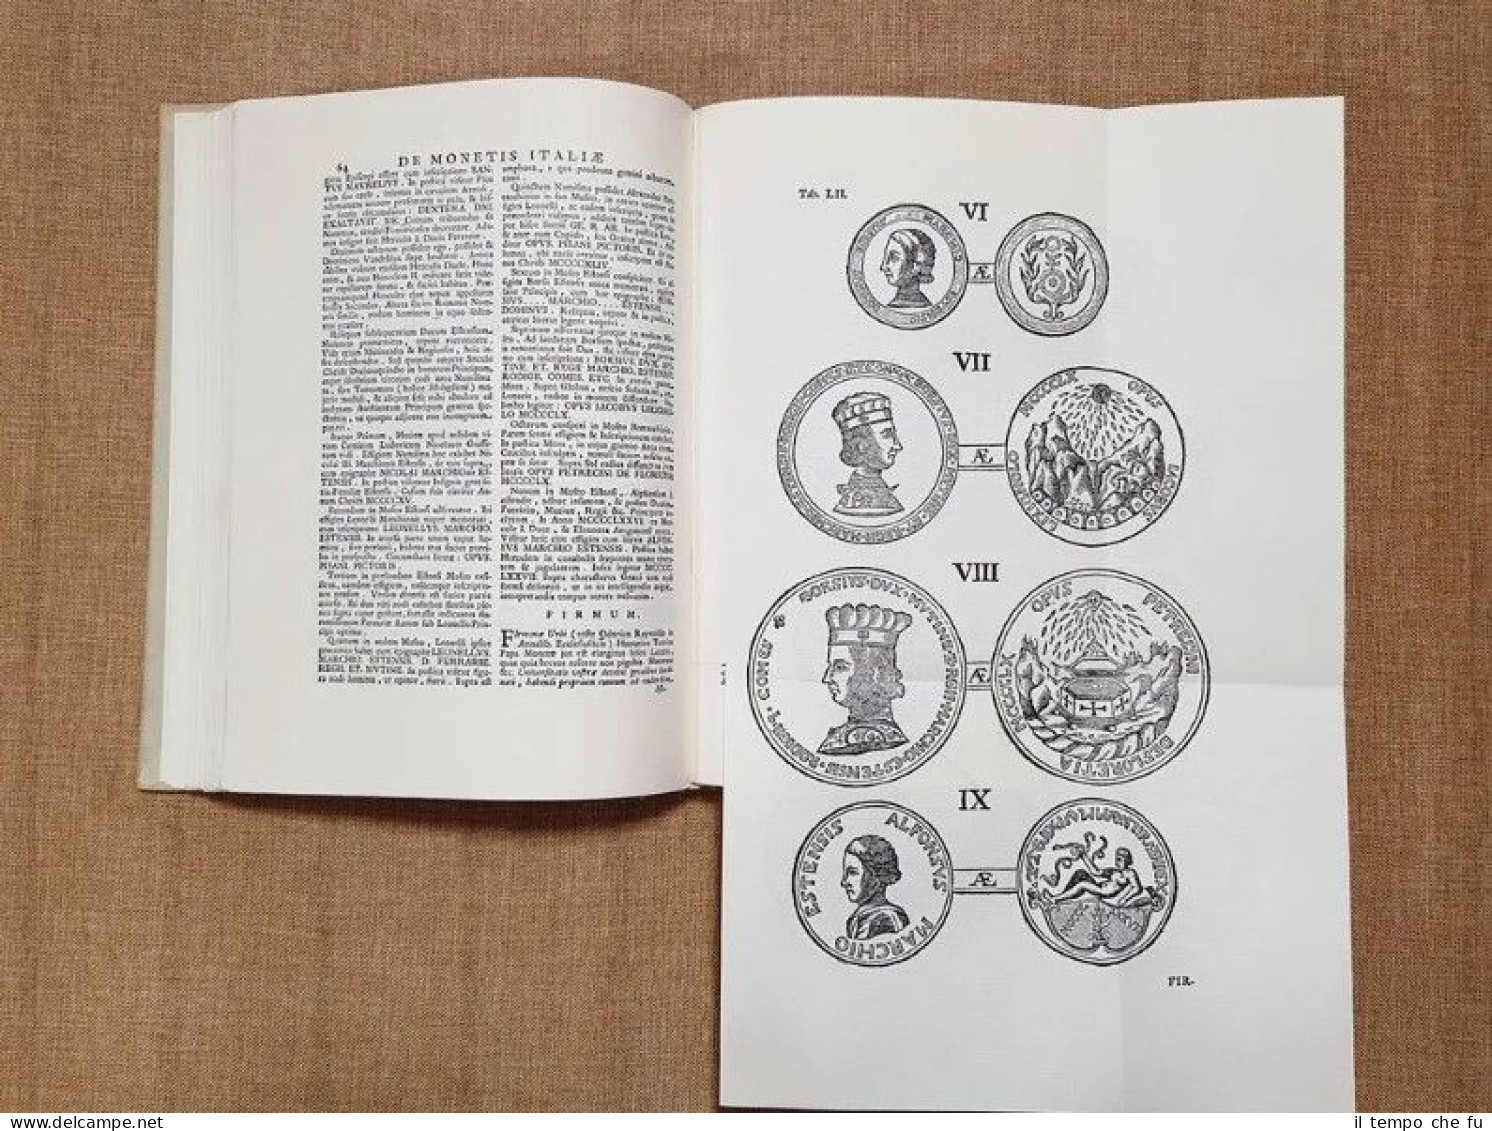 De Monetis Italiae 6 volumi Argelatus o Argelati 1750 Anastatica Numismatica